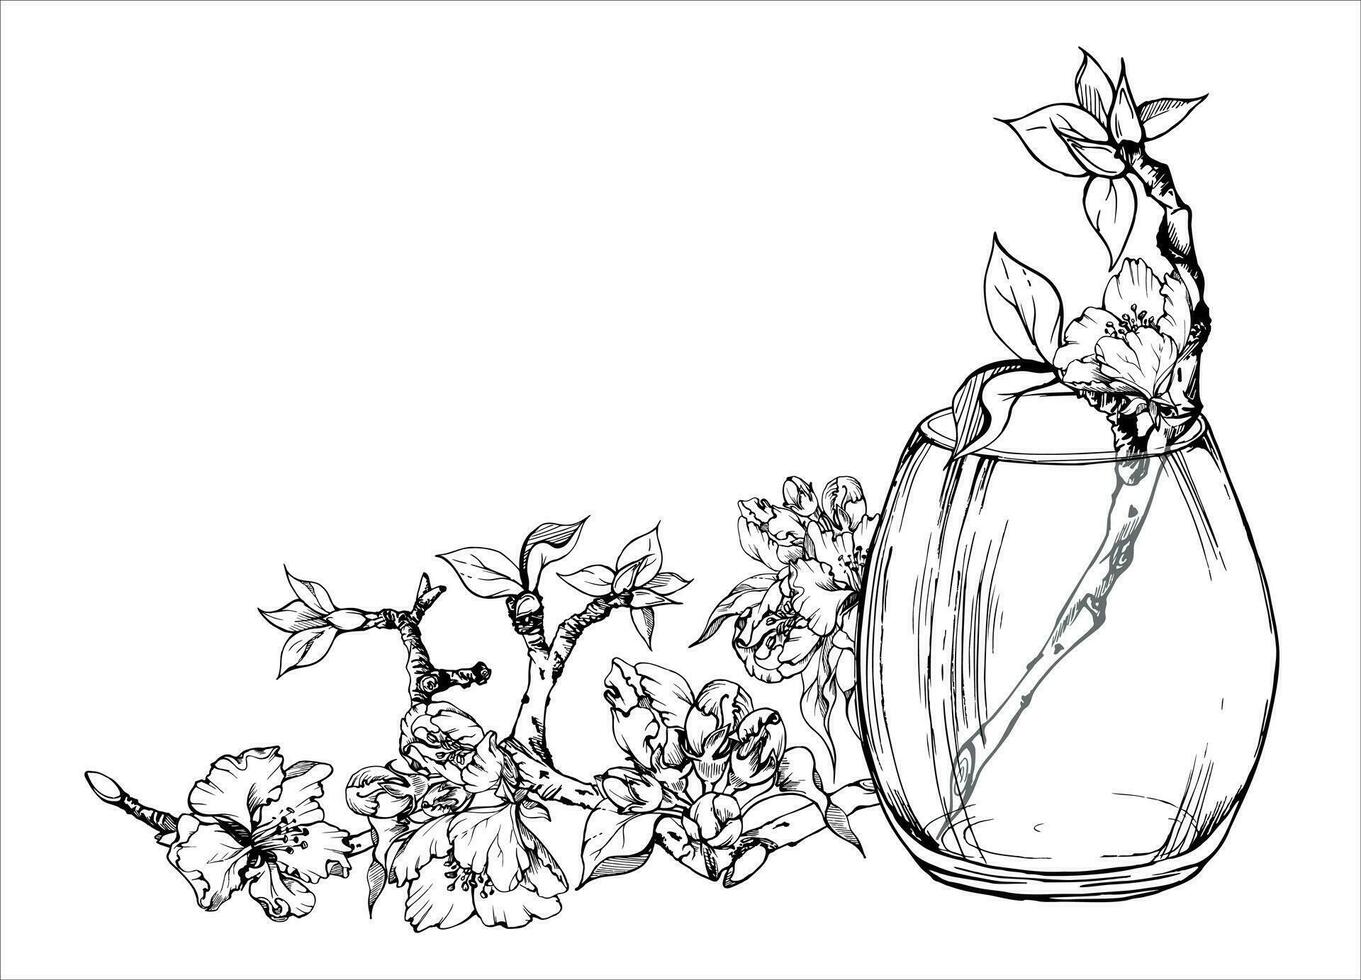 hand dragen bläck sammansättning med äpple blommor på gren med löv och glas flaska. isolerat på vit bakgrund. design för vägg konst, bröllop, skriva ut, tyg, omslag, kort, inbjudan. vektor